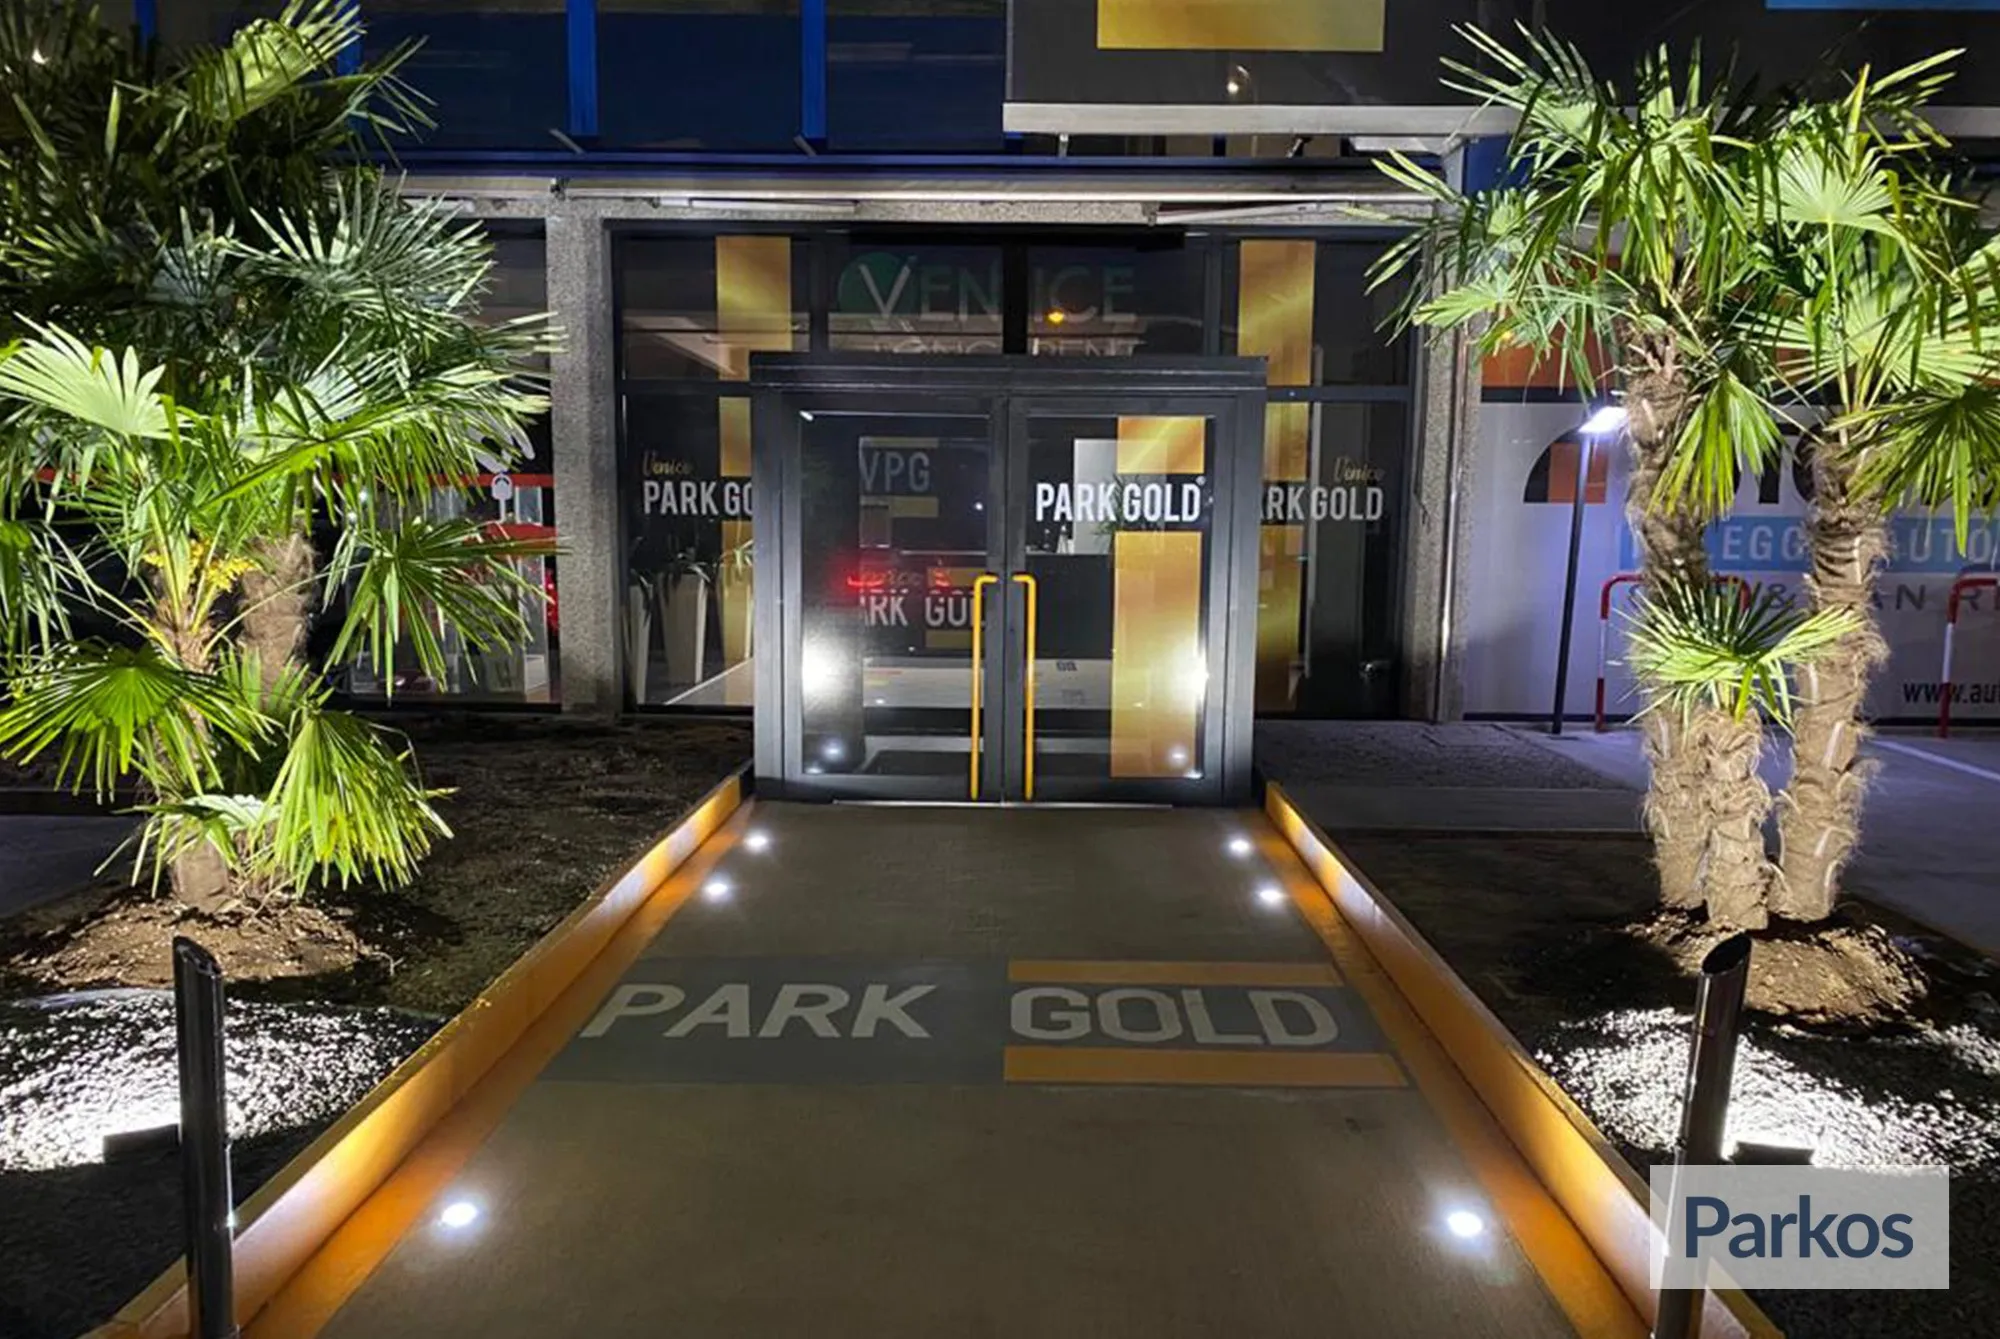 Park Gold Venezia (Paga online) - Venice Airport Parking - picture 1